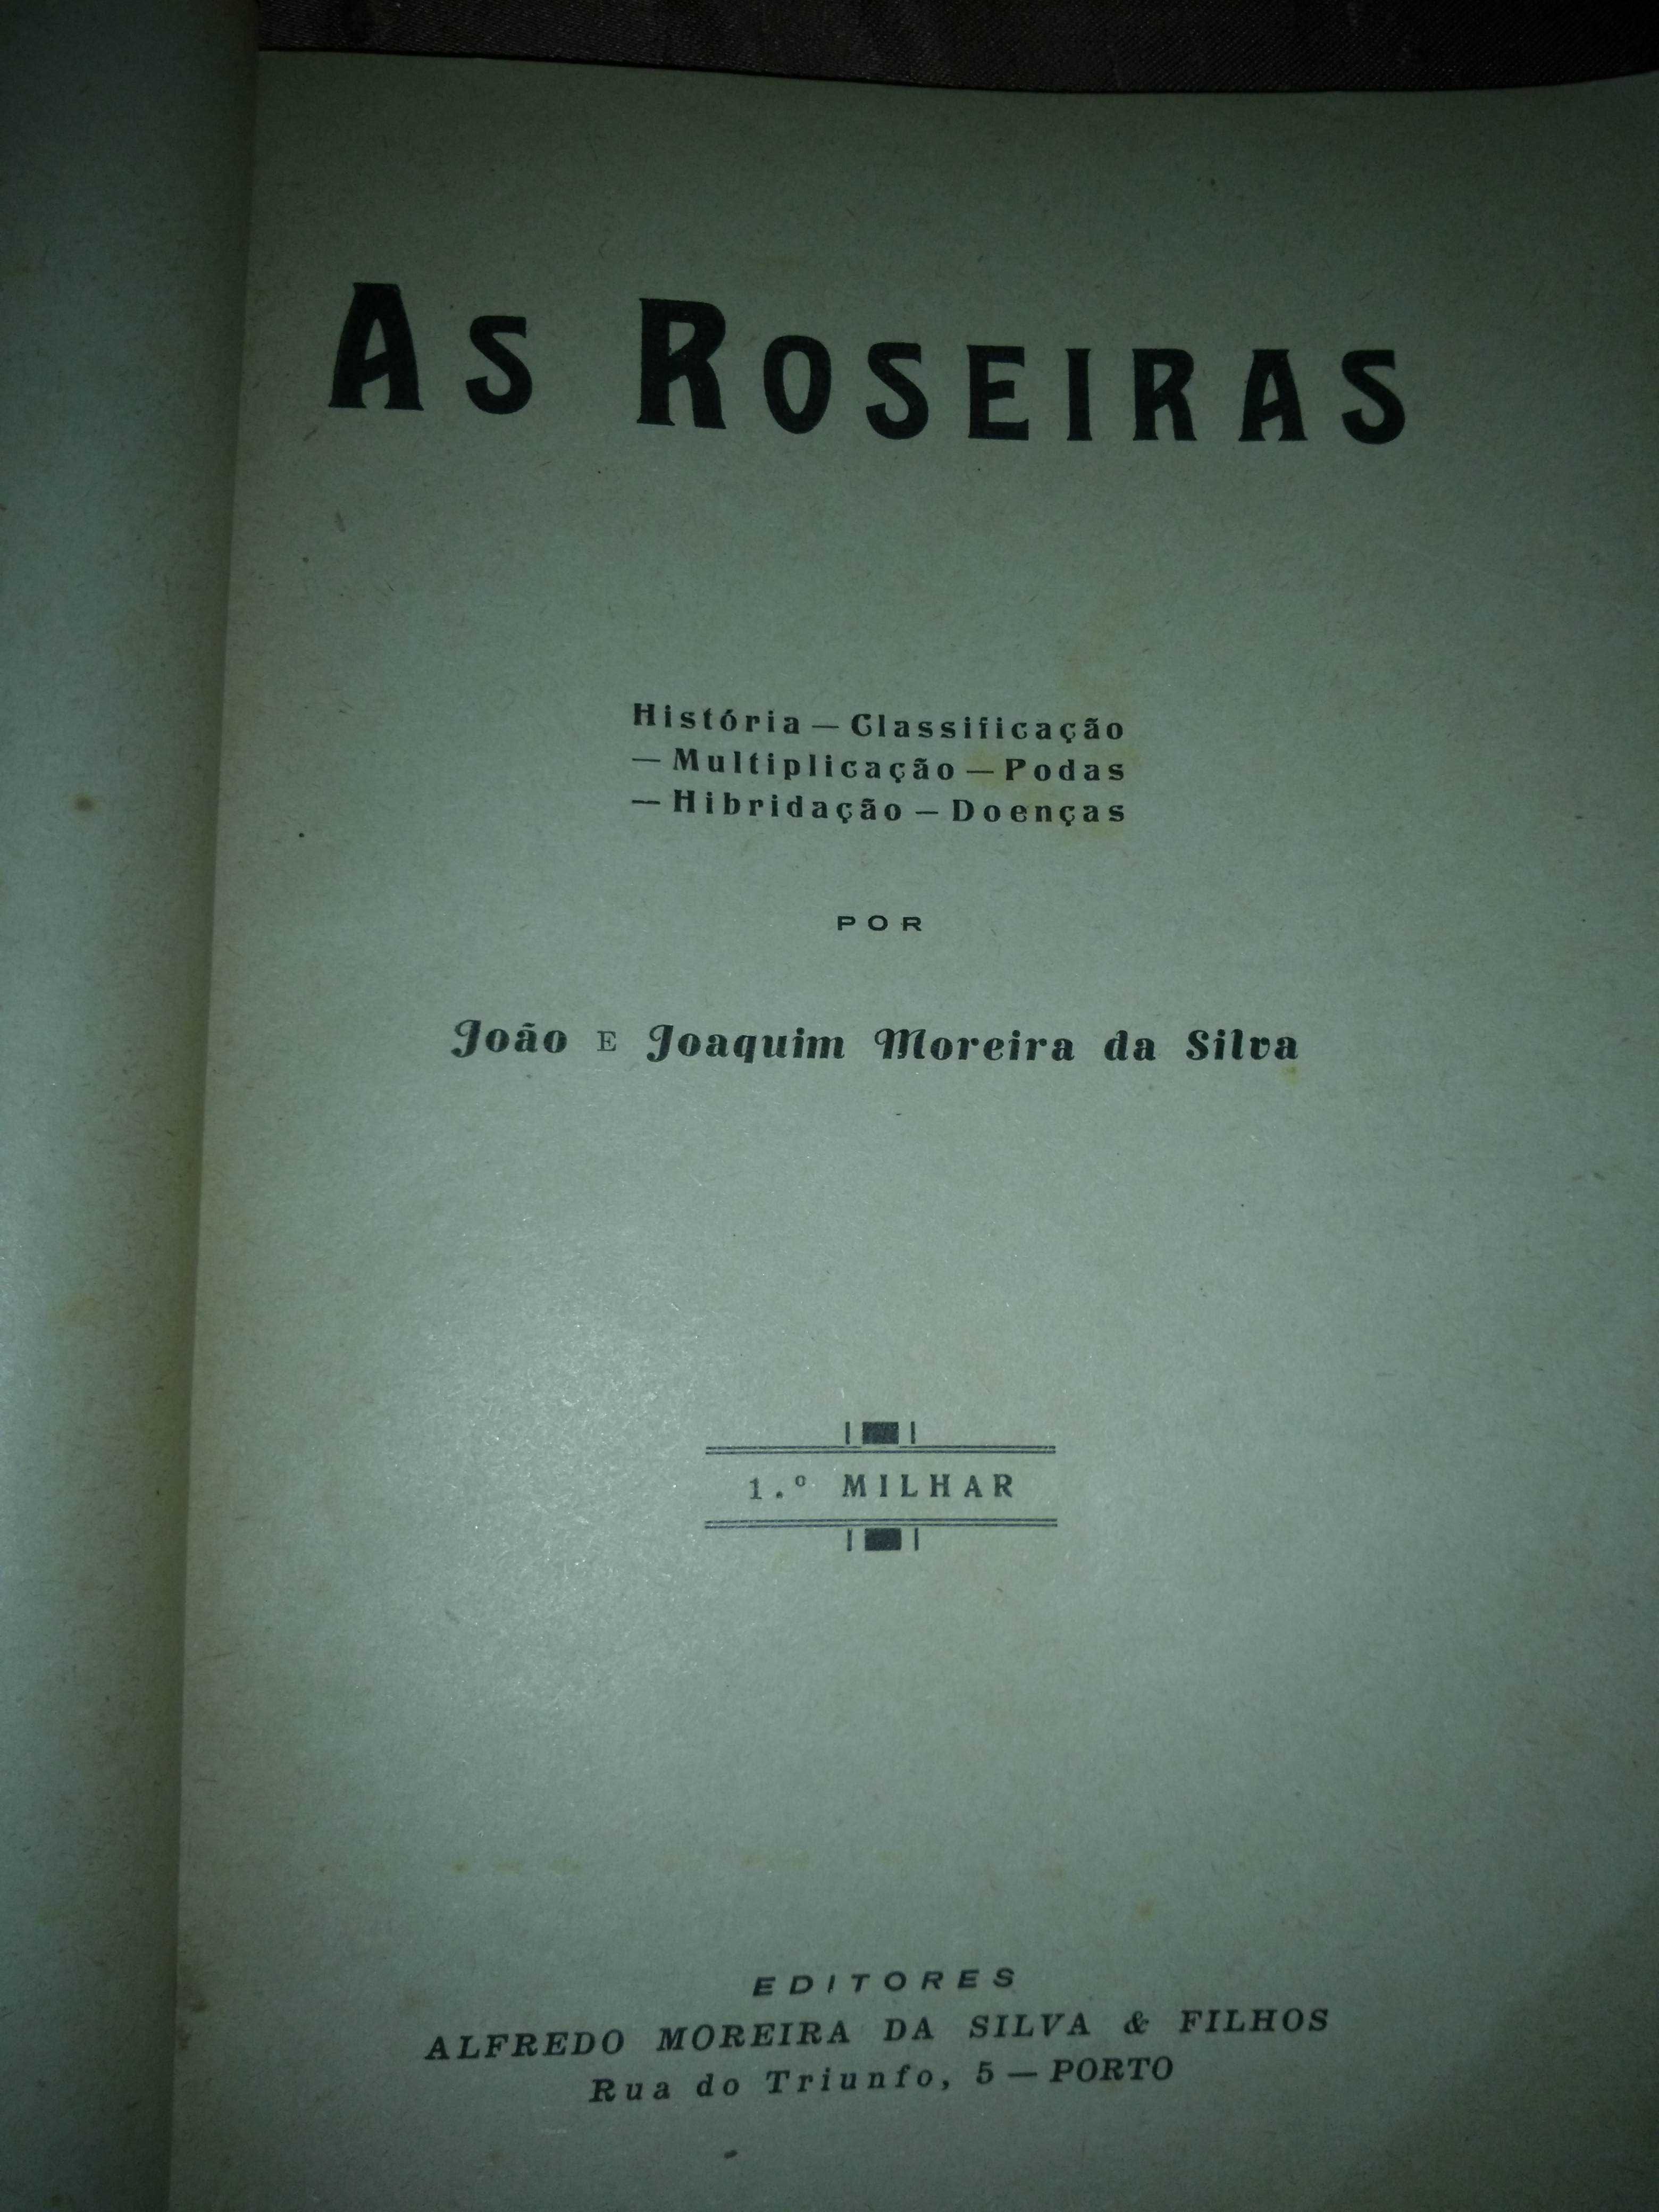 As Roseiras - João e Joaquim Moreira da Silva - 1.ª edição